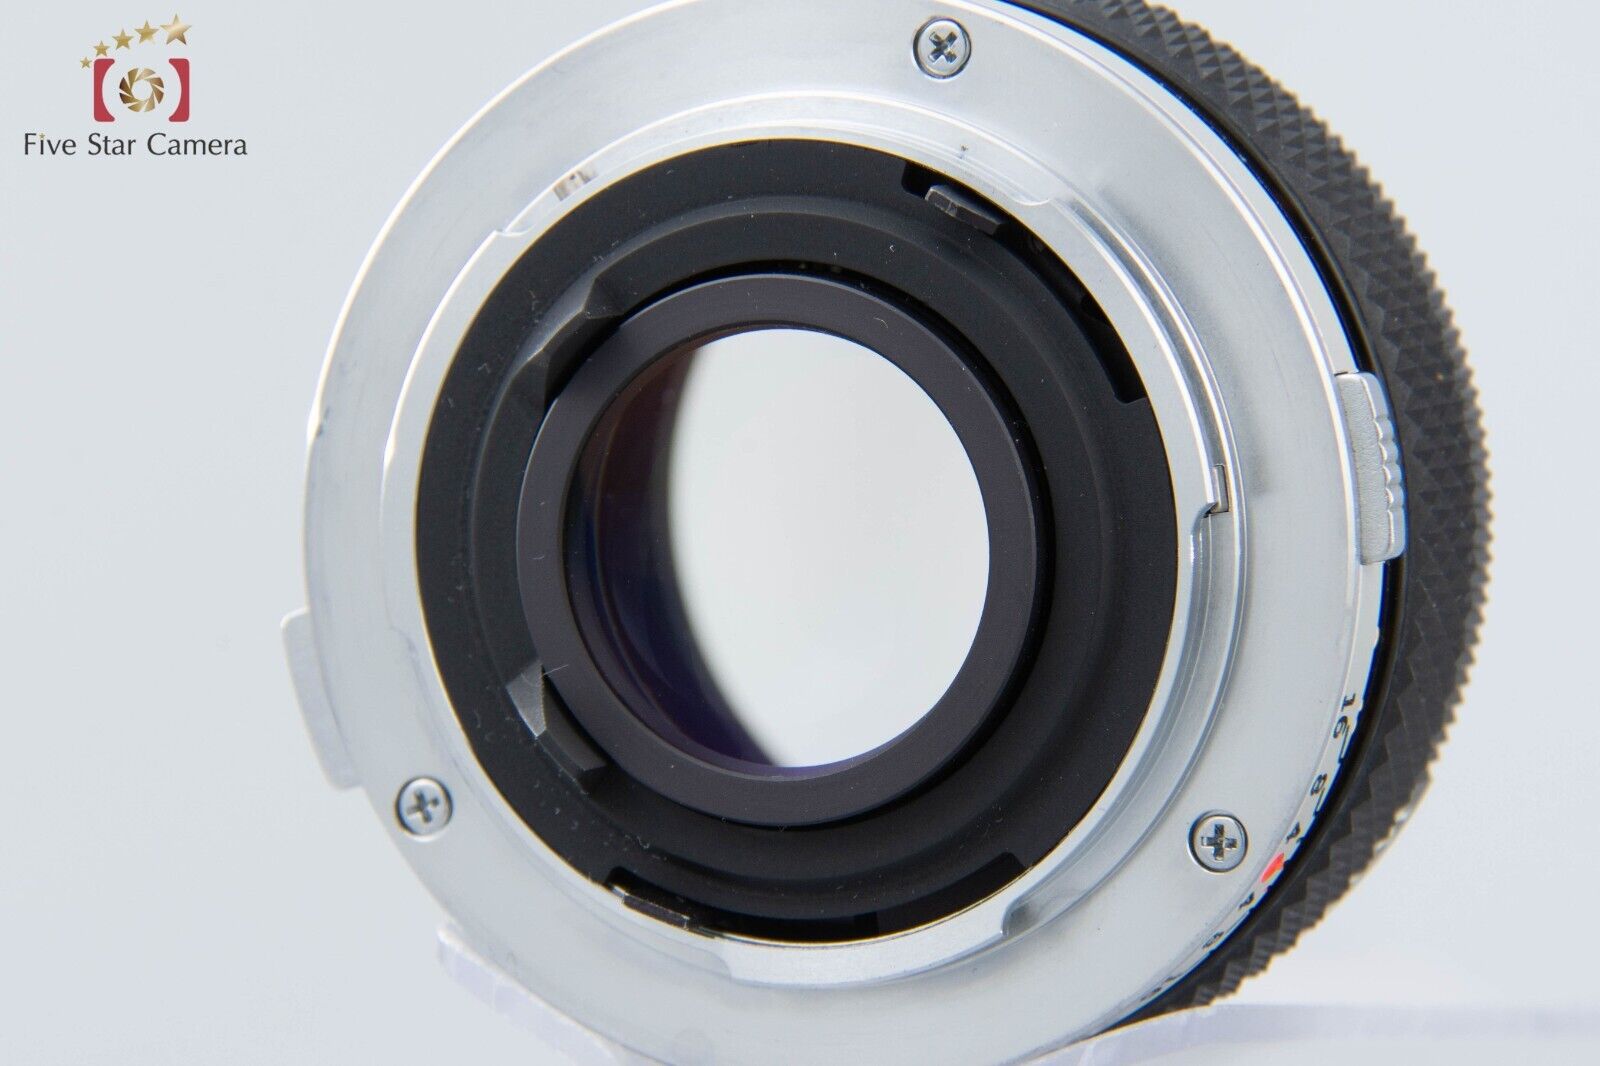 Olympus OM10 Silver 35mm SLR Film Camera + ZUIKO MC AUTO-S 50mm f/1.8